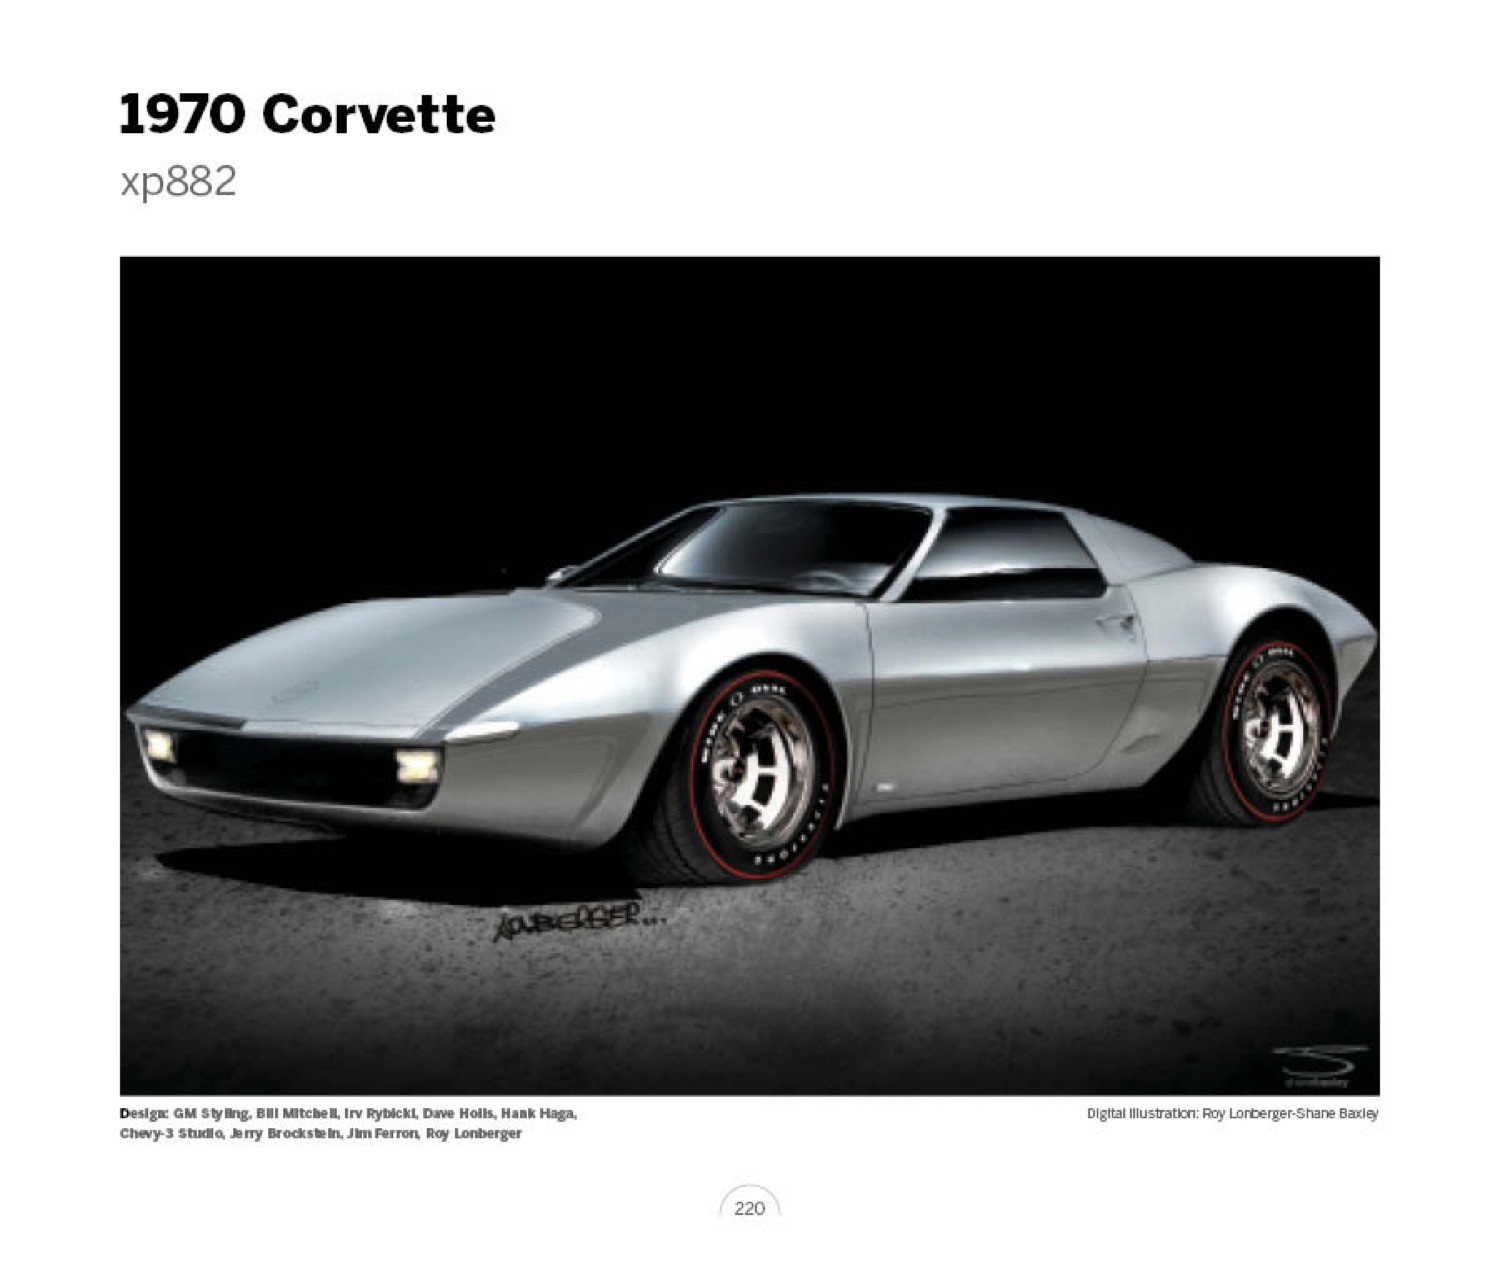 (34) 1970 Corvette xp882 LoRez.jpg